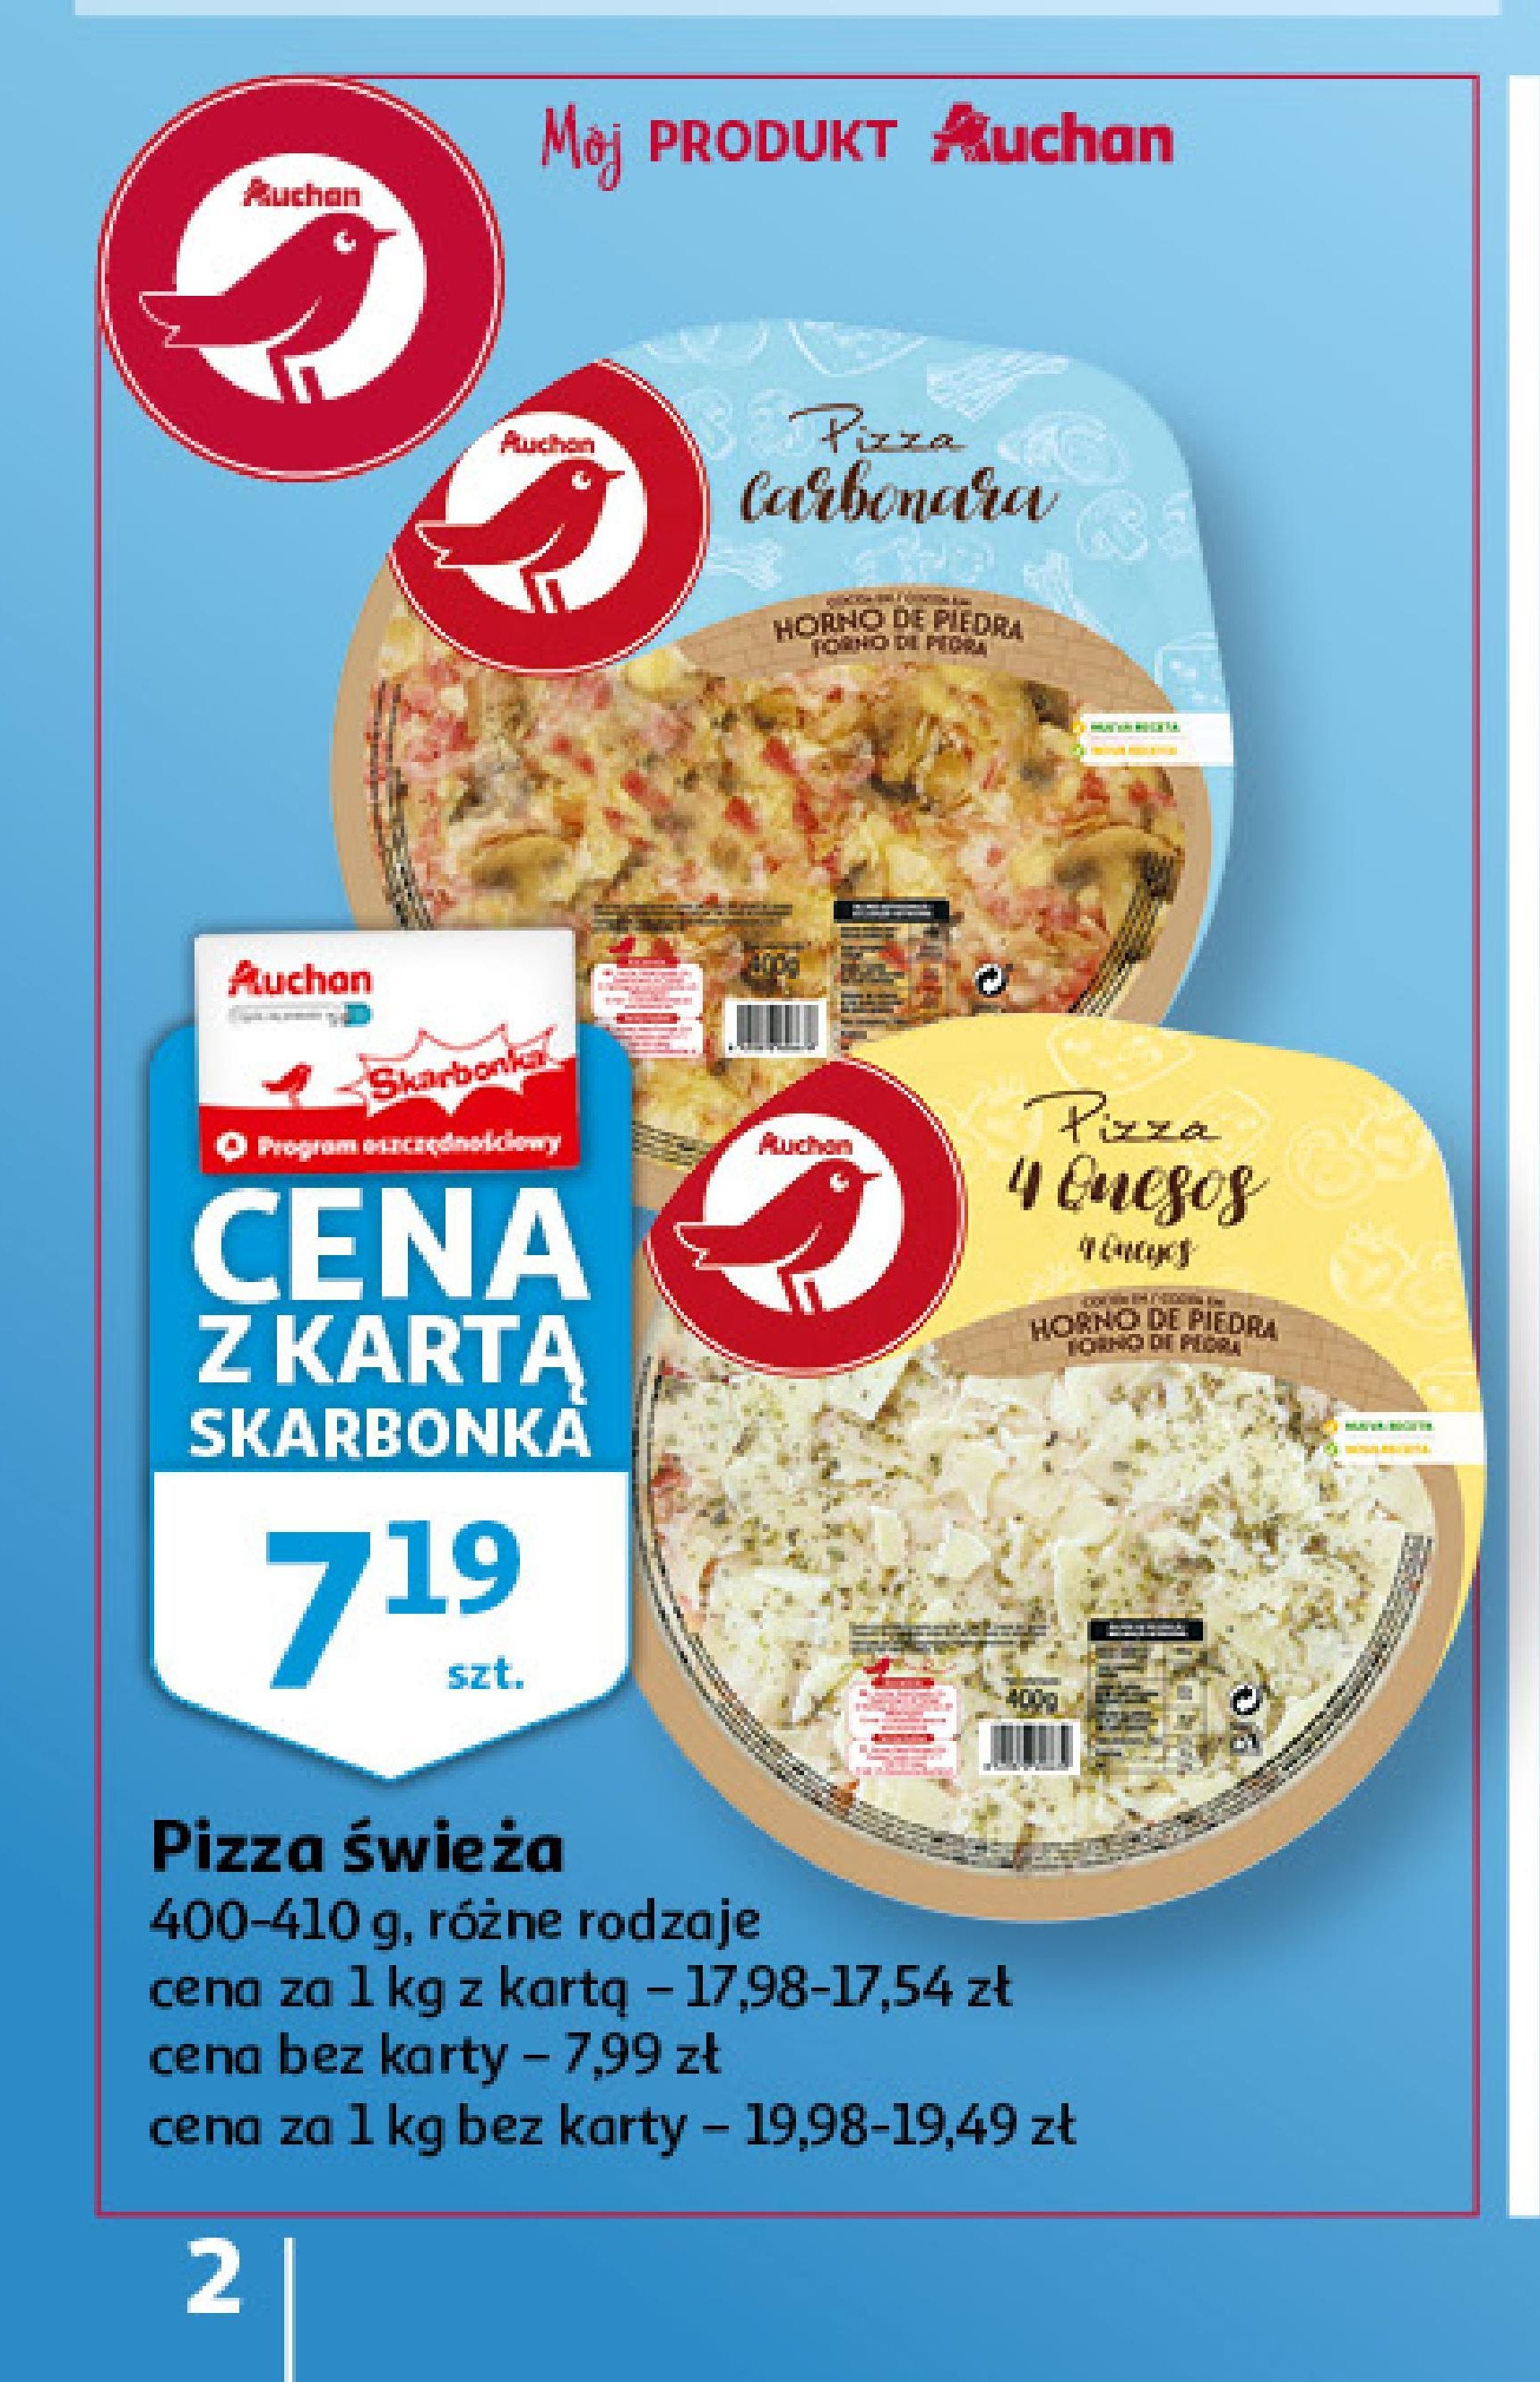 Pizza carbonara Auchan różnorodne (logo czerwone) promocja